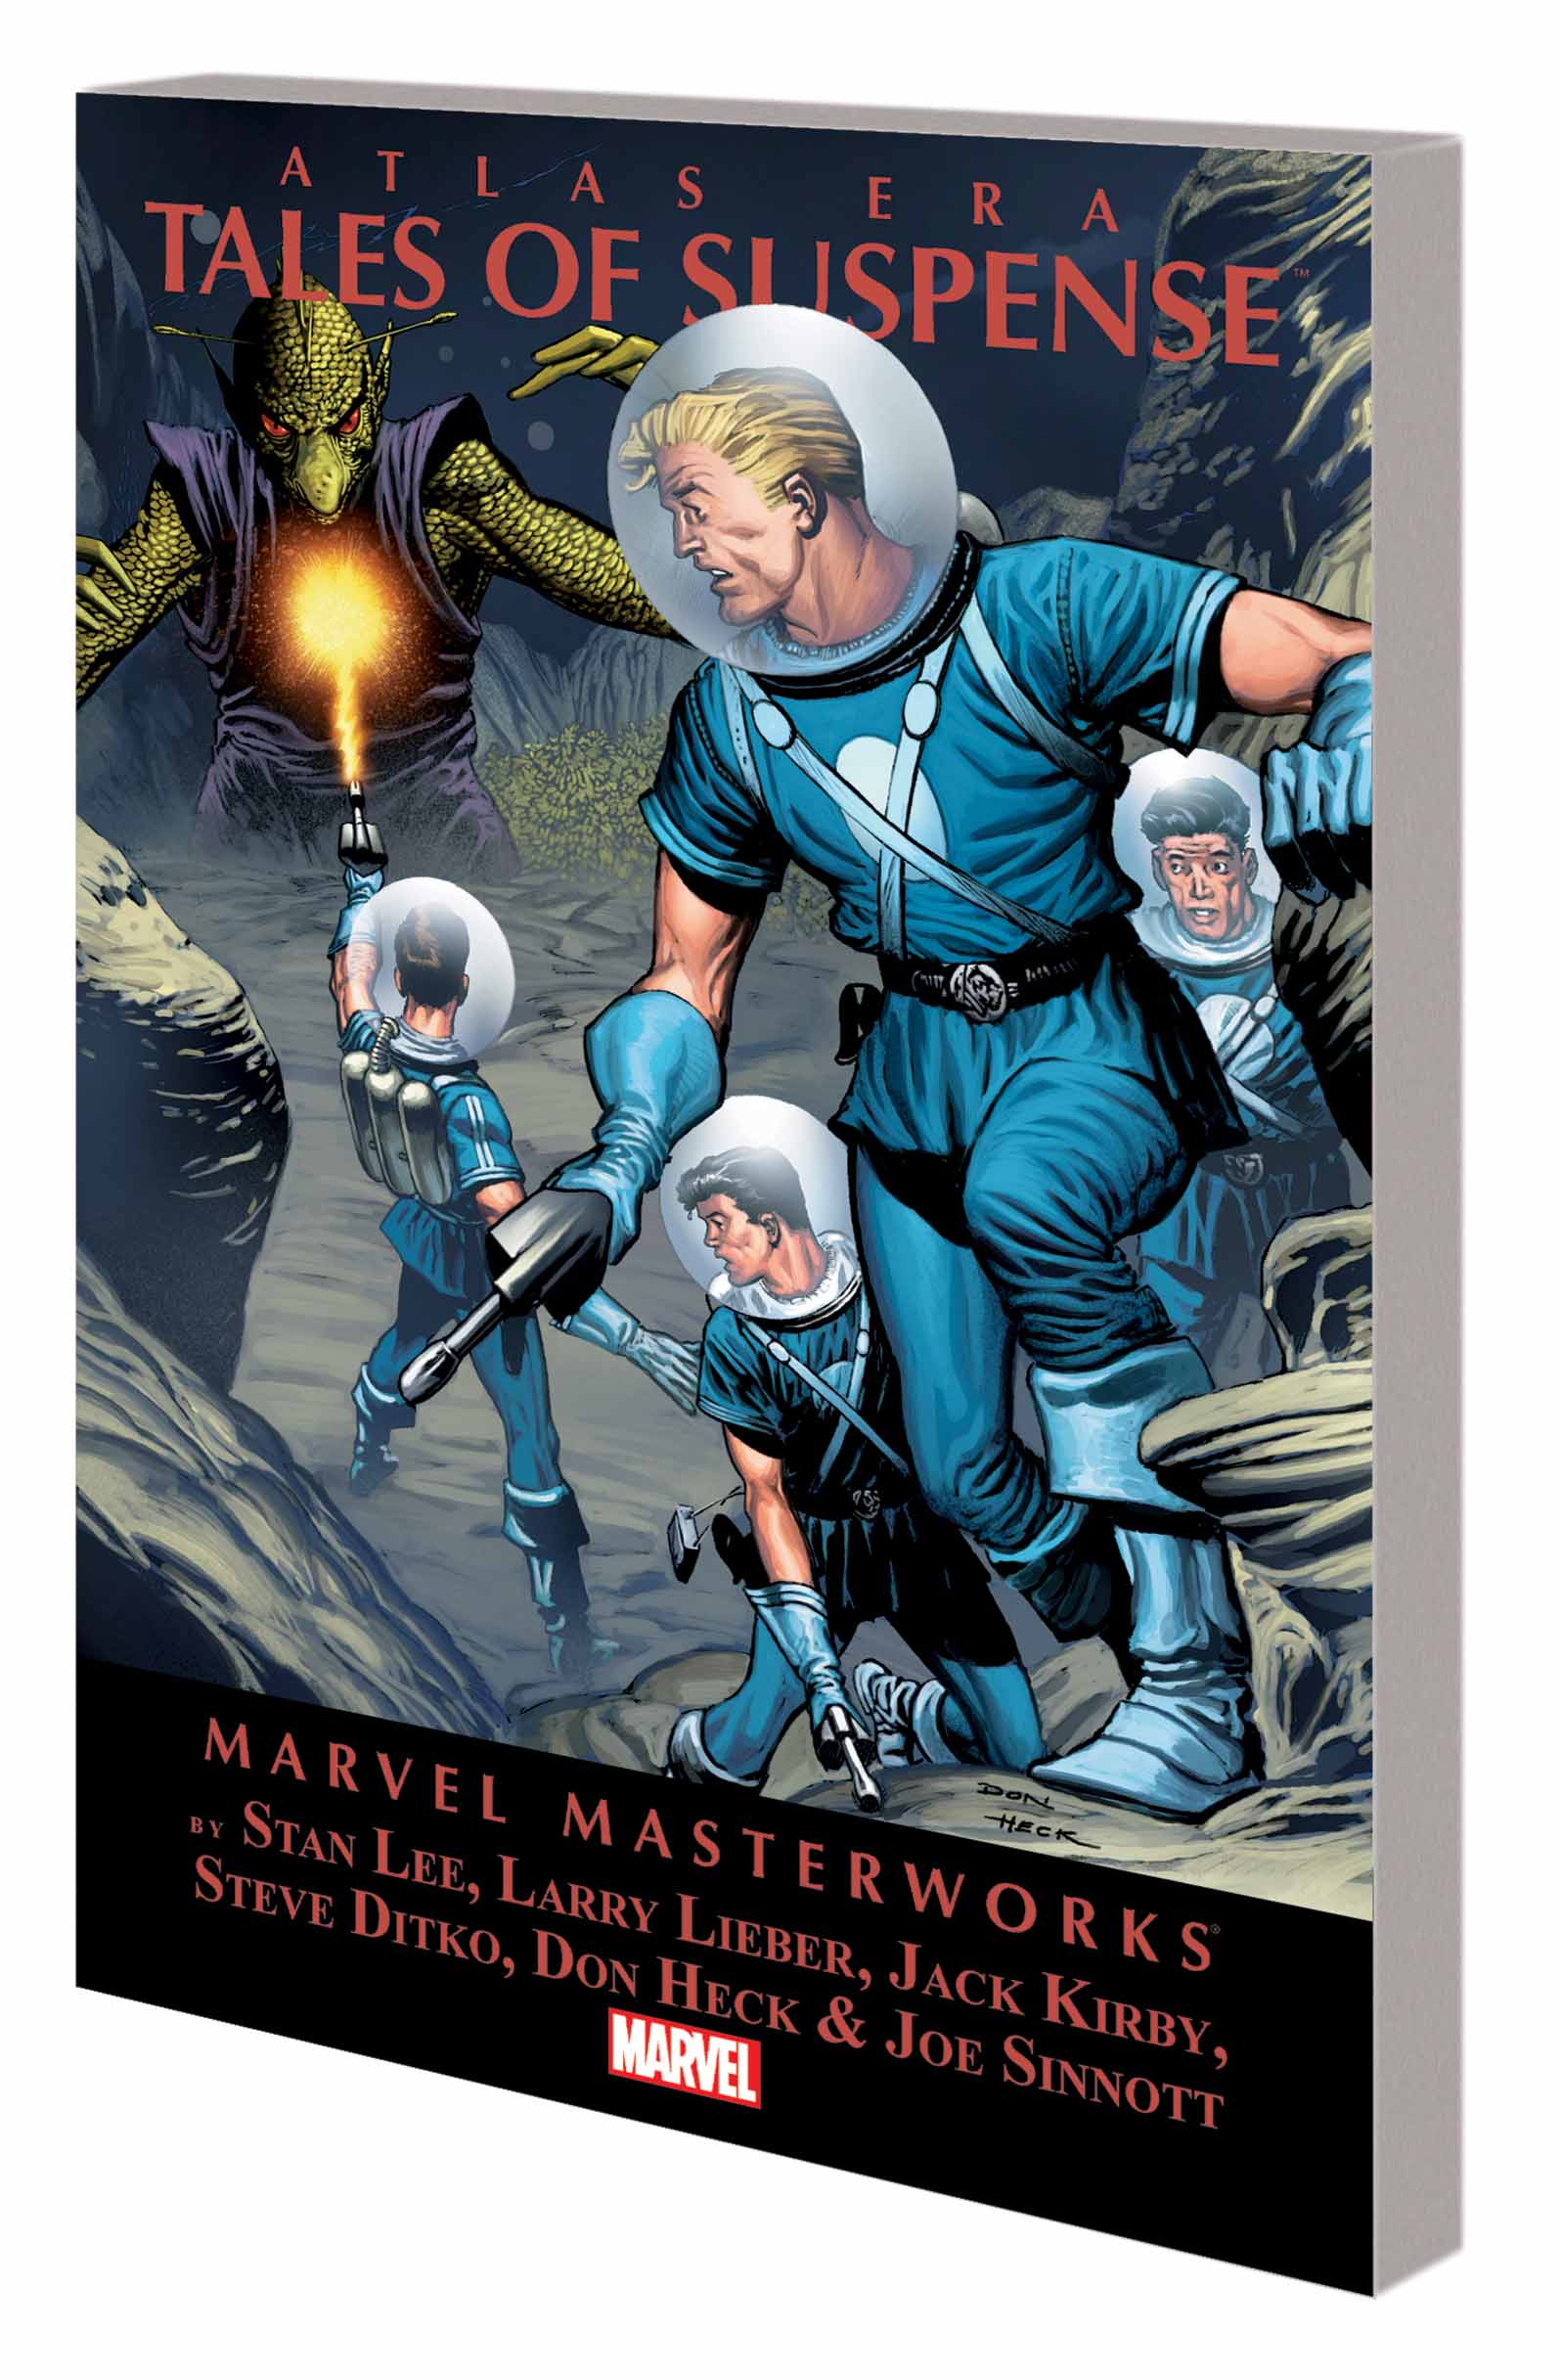 Marvel Masterworks: Atlas Era Tales of Suspense (Trade Paperback)